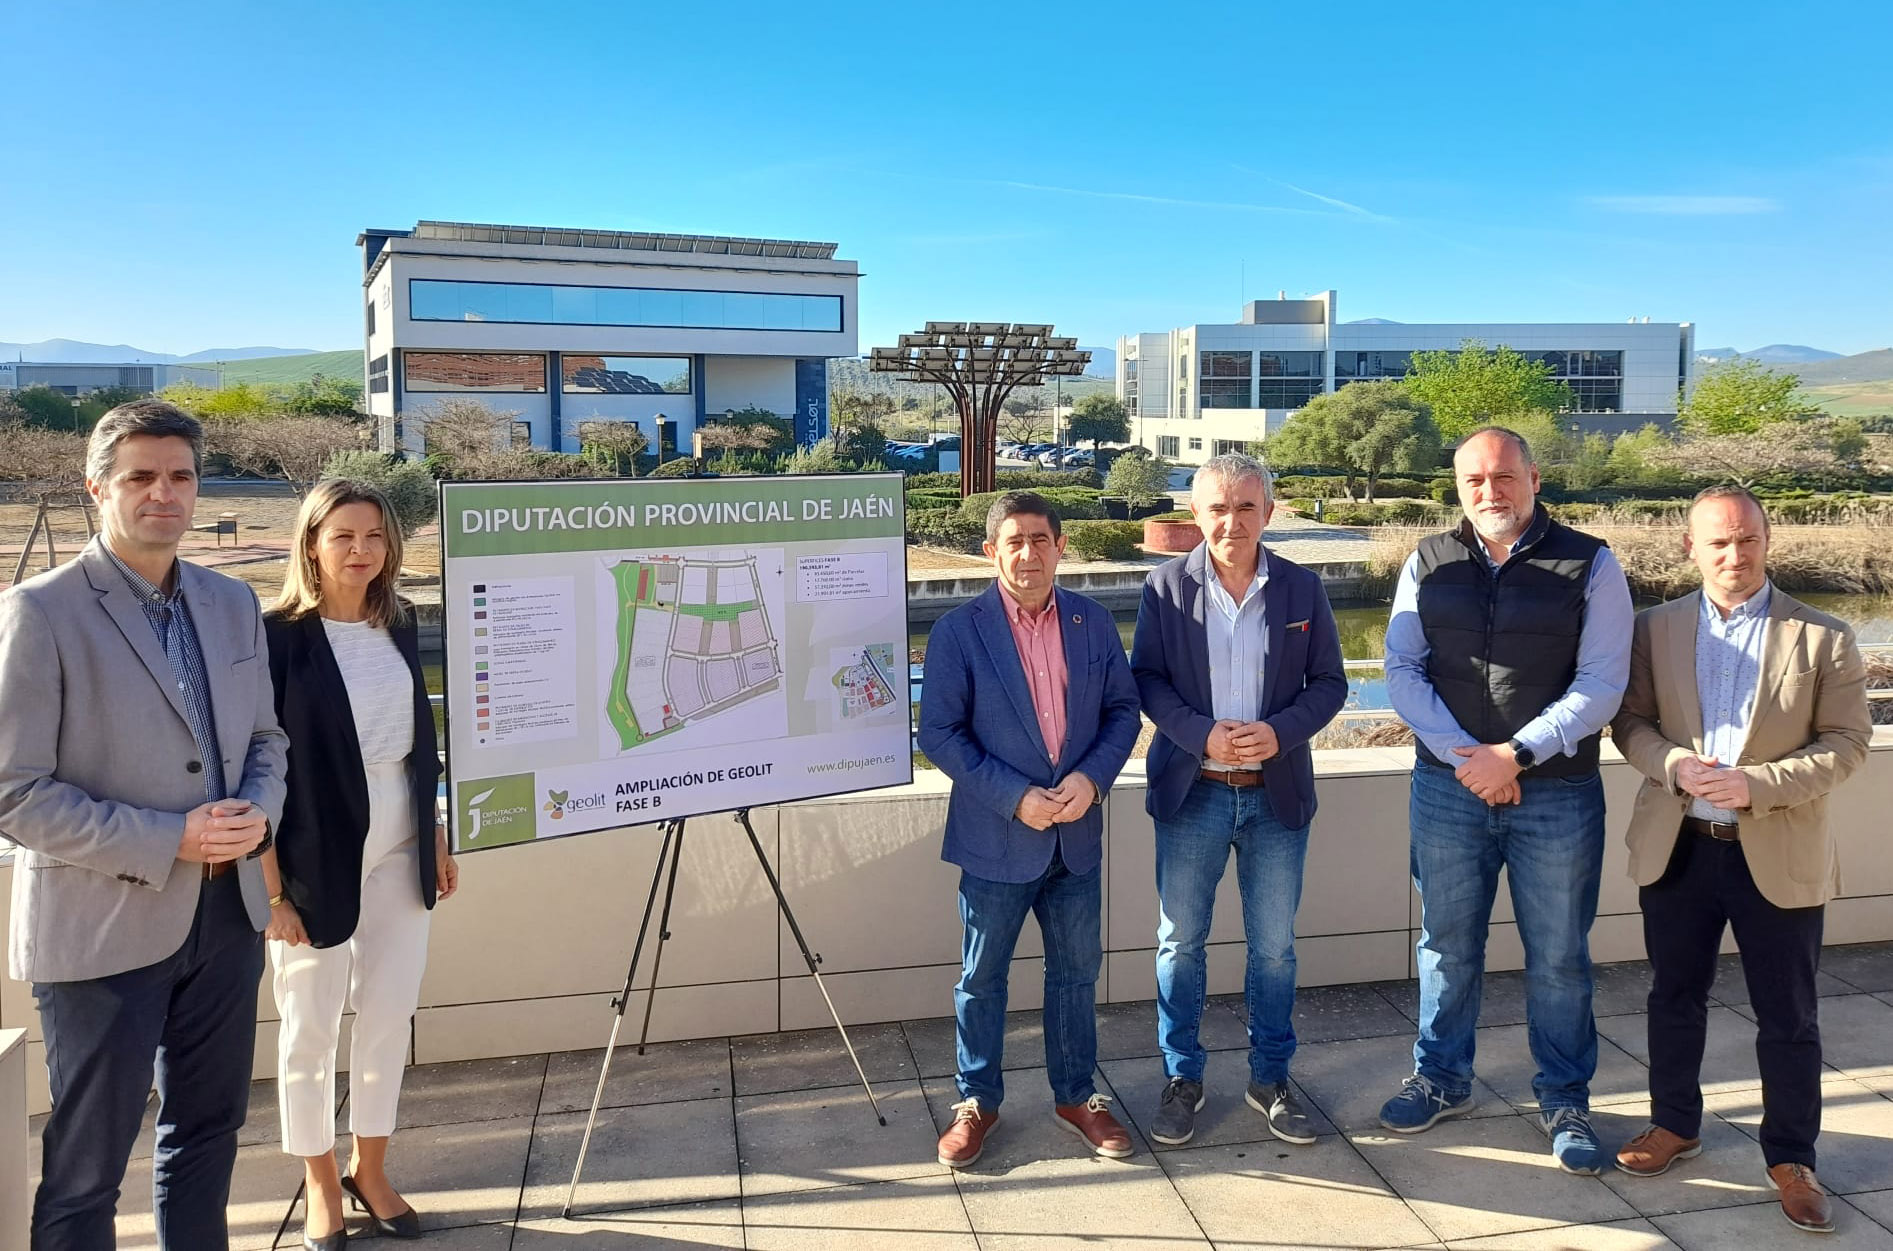 La Diputación de Jaén ampliará en otros 200.000 metros cuadrados el suelo industrial disponible en Geolit